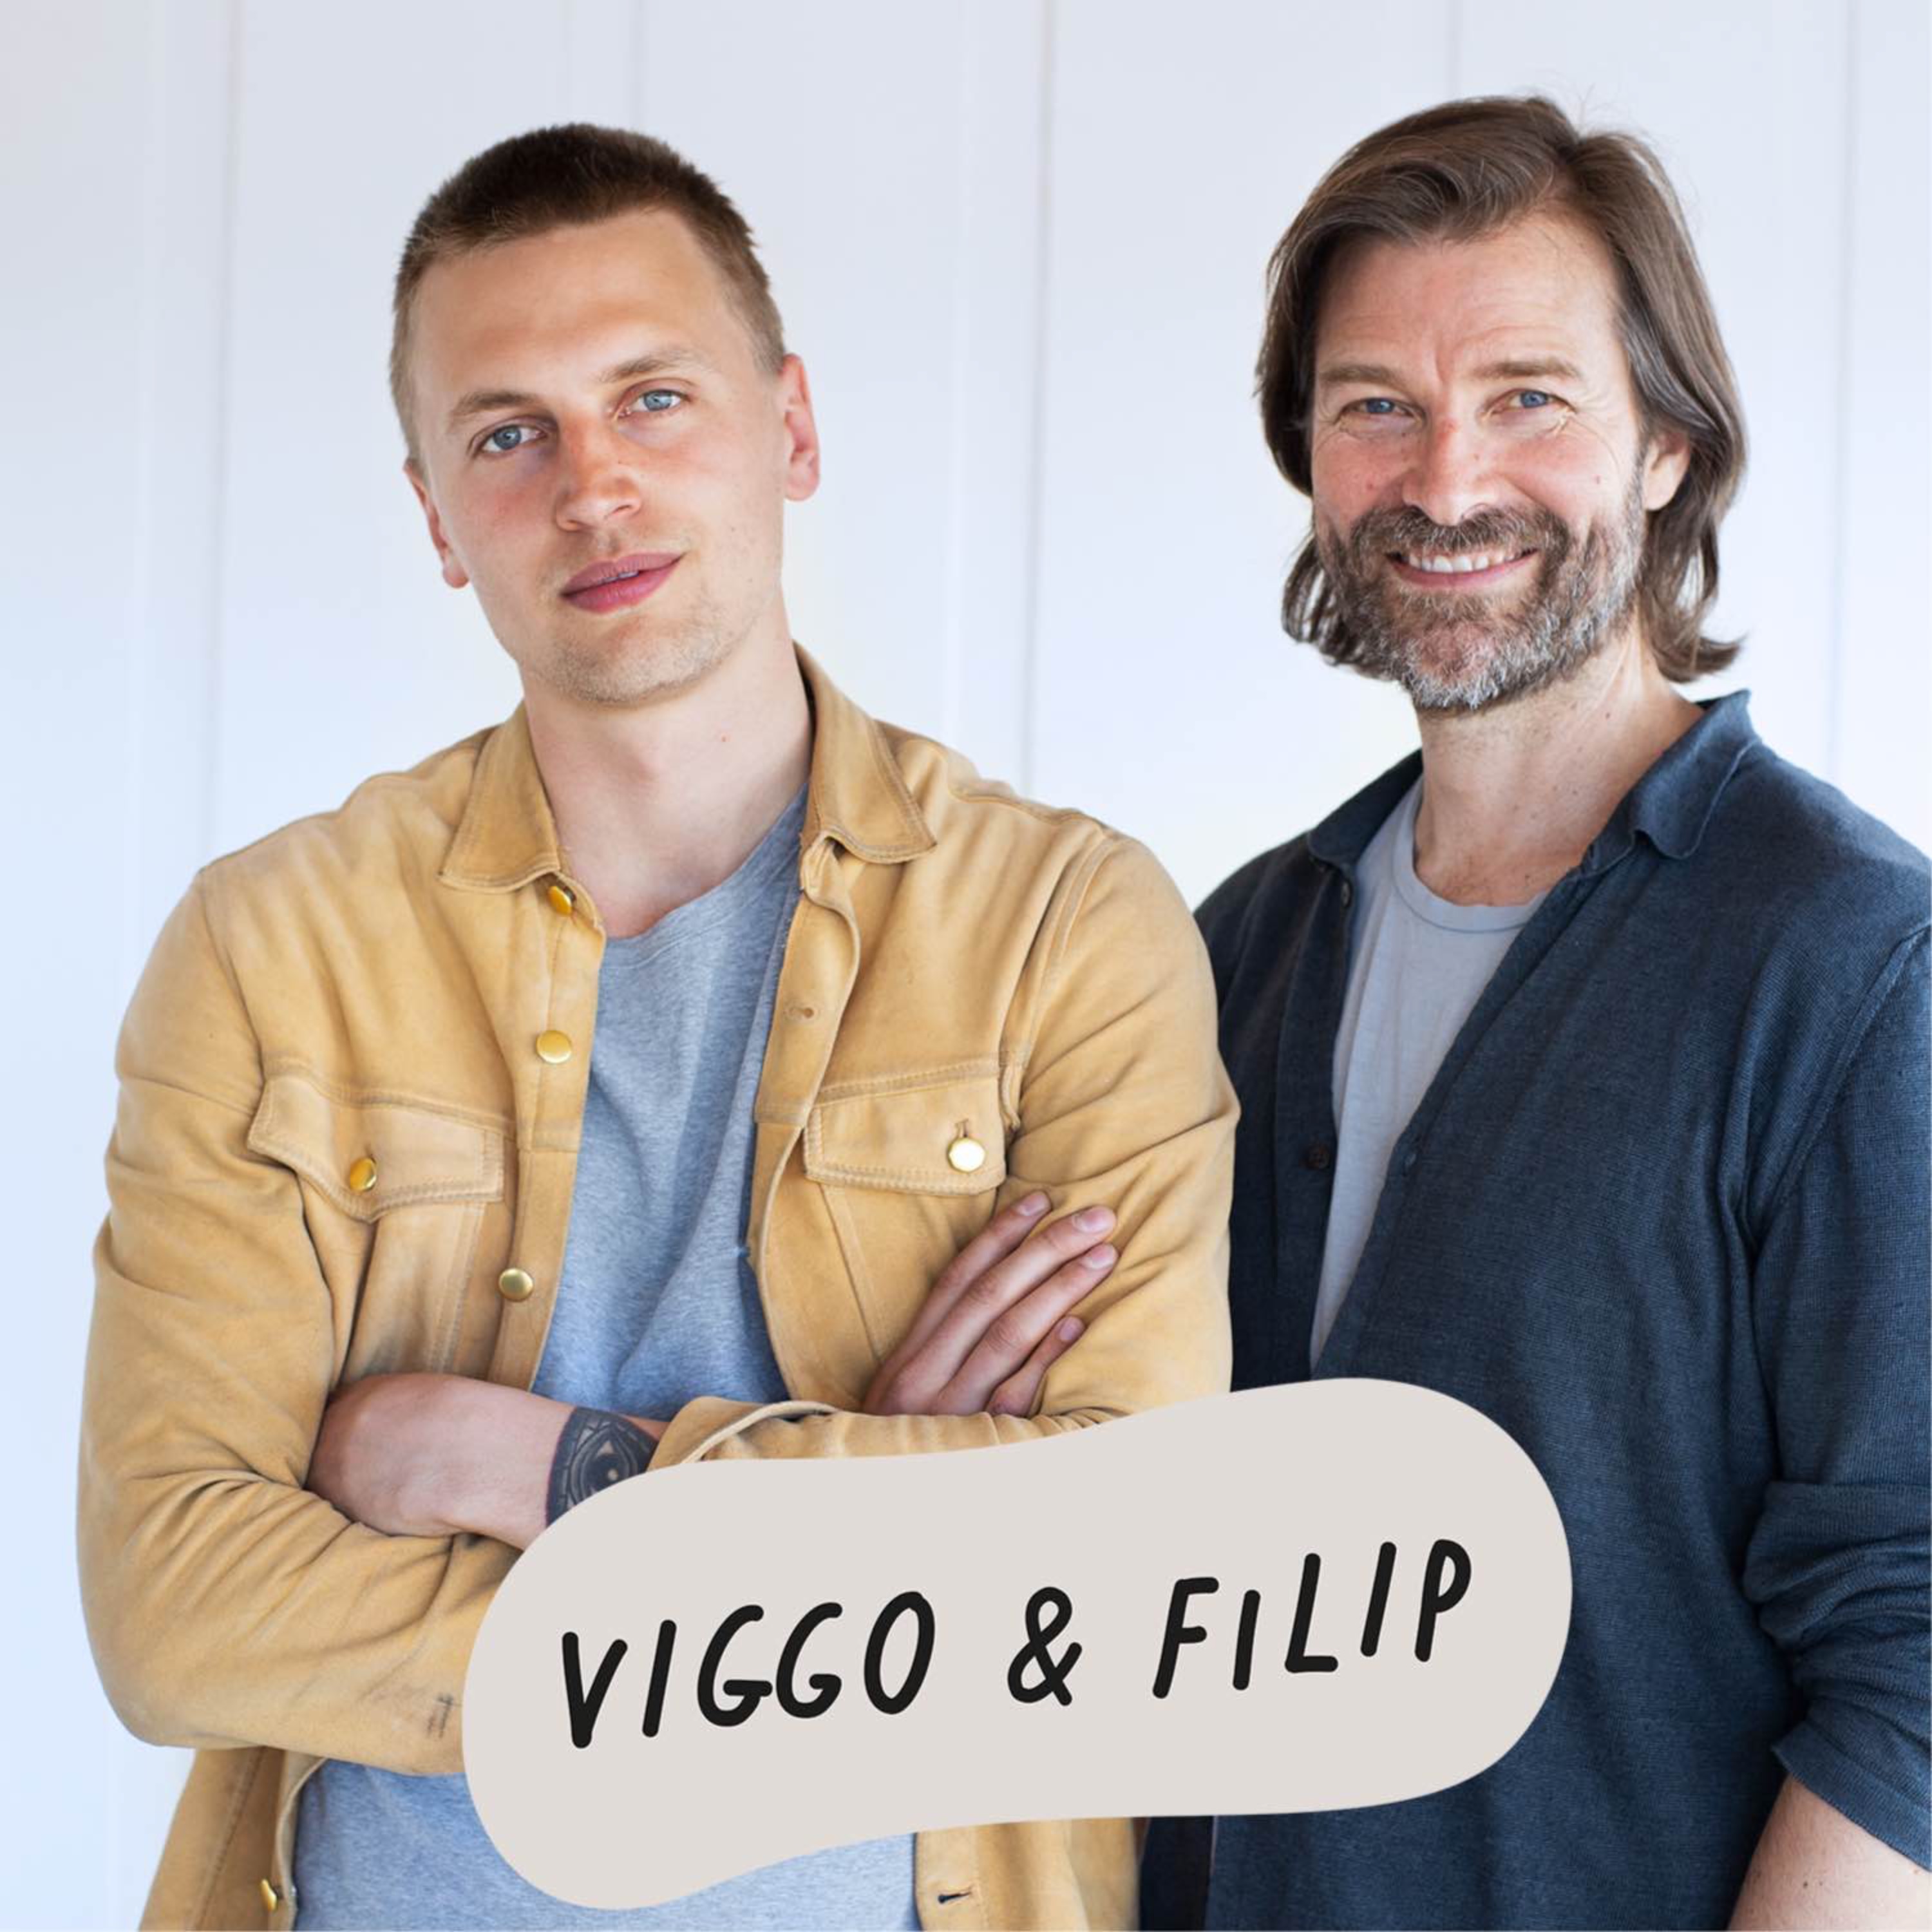 Viggo & Filip